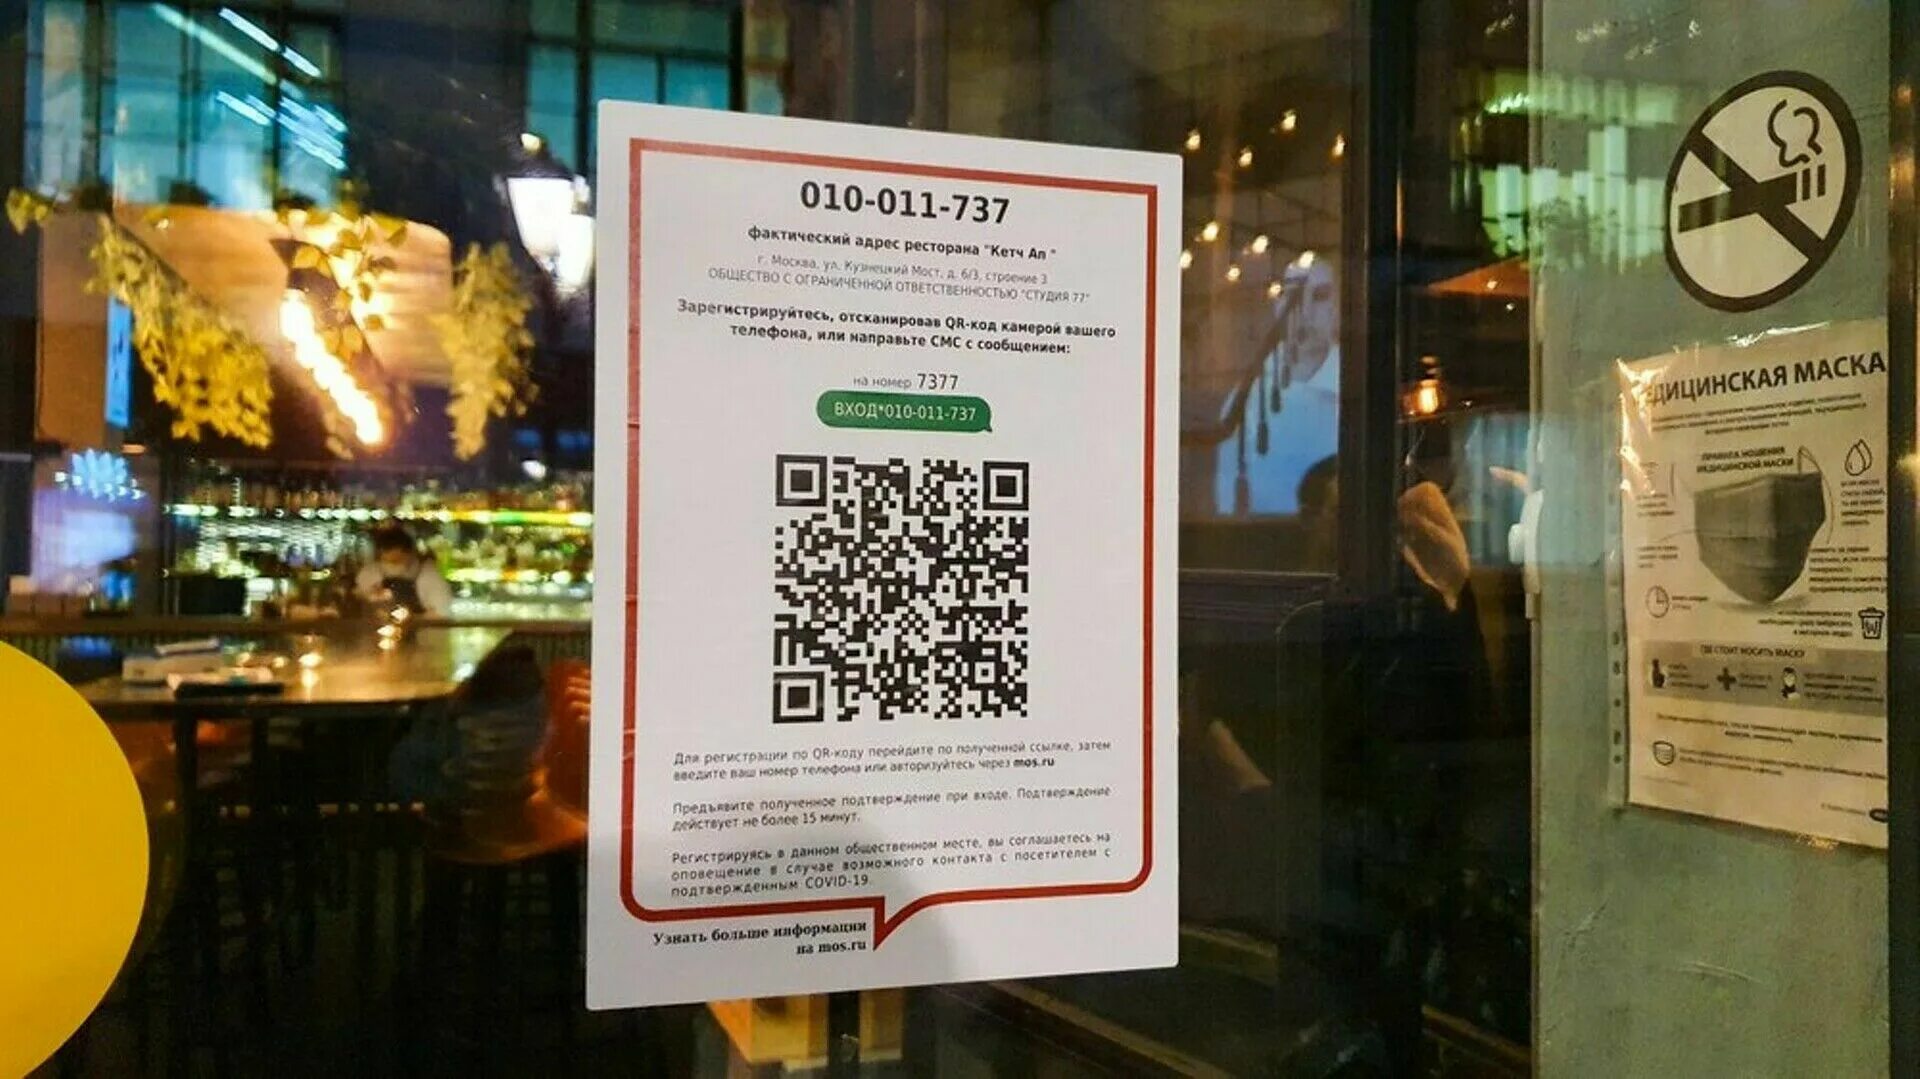 QR код в общественных местах. QR коды в ресторанах. QR-коды для посещения общественных мест. QR код для входа в ресторан.